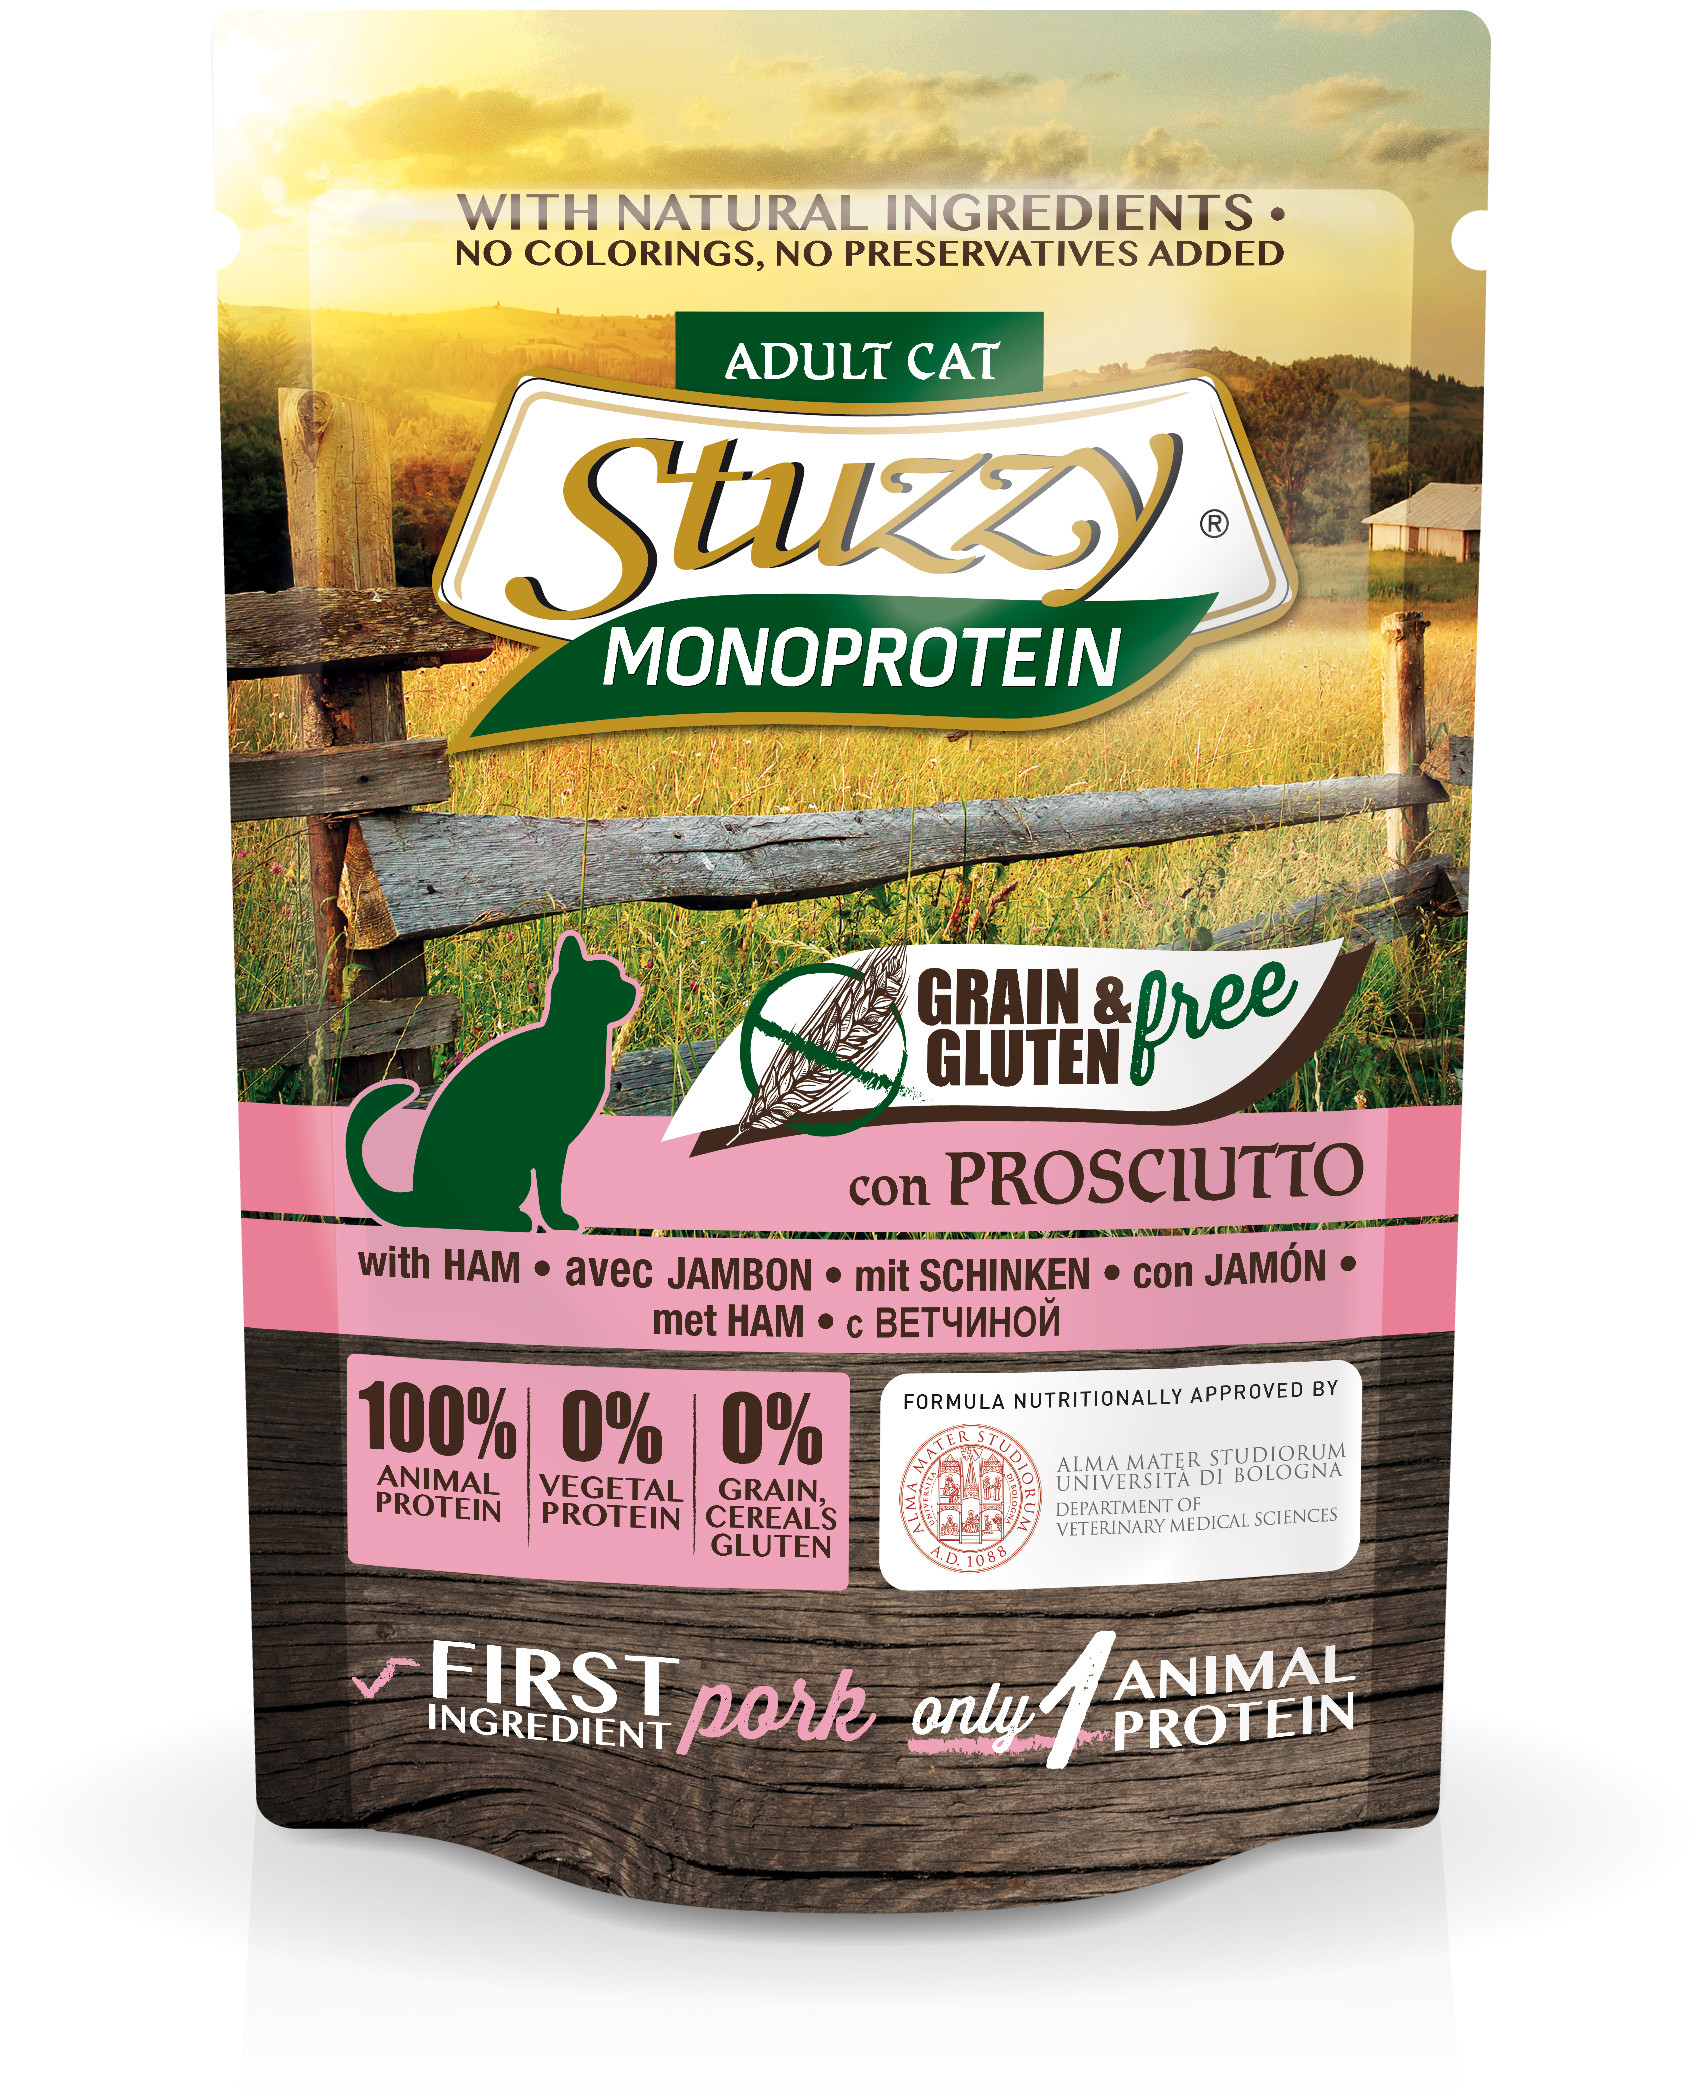 Stuzzy Monoprotein 85г консервы для кошек ветчина, пауч от зоомагазина Дино Зоо